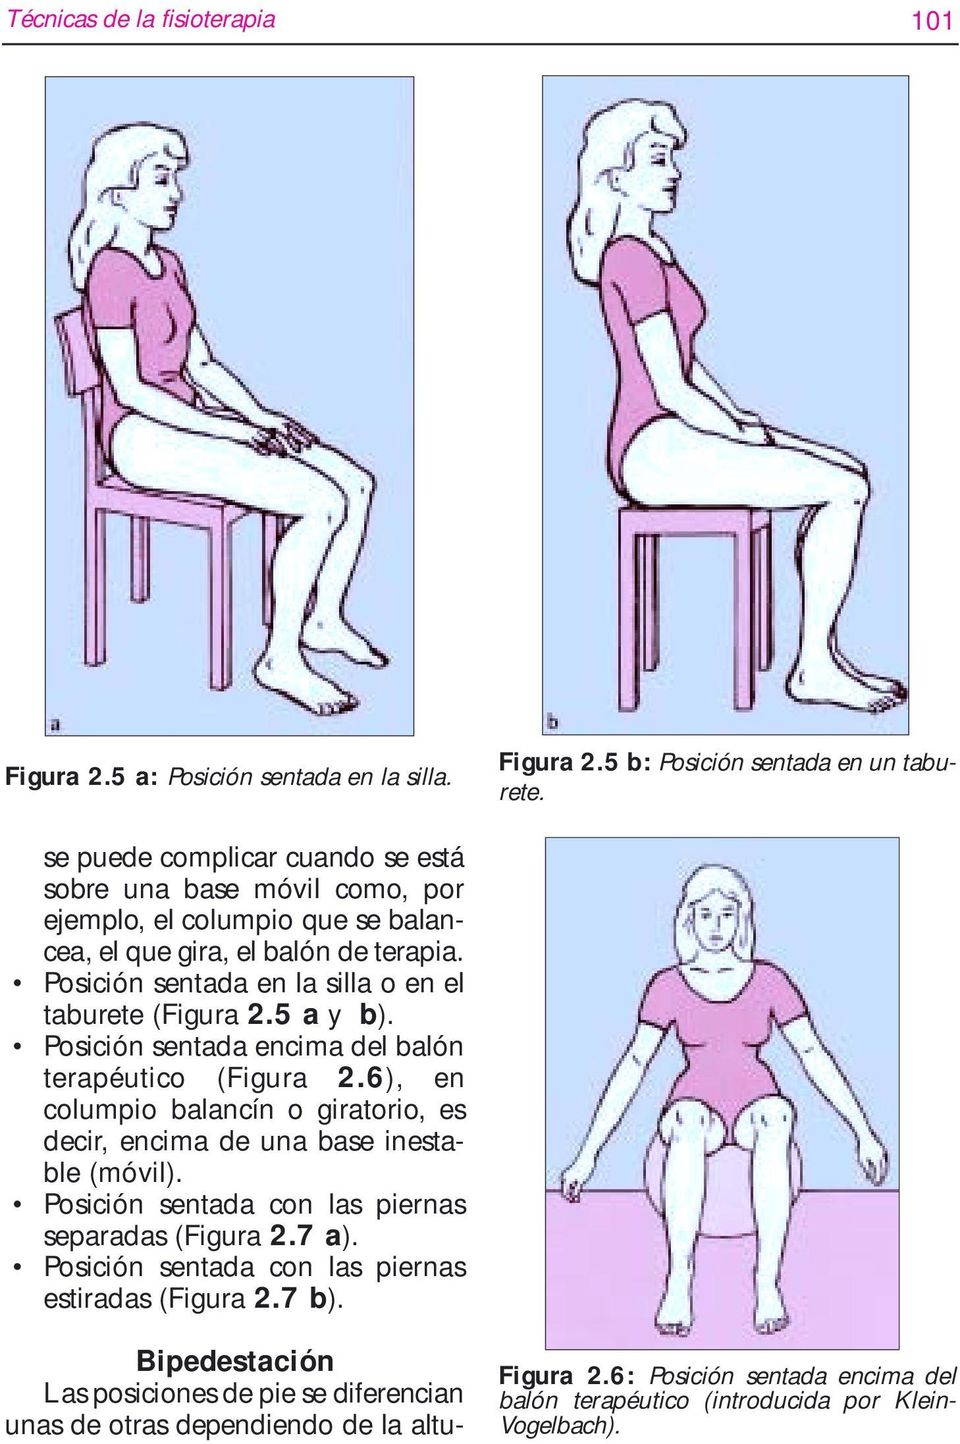 Posición sentada en la silla o en el taburete (Figura 2.5 a y b). Posición sentada encima del balón terapéutico (Figura 2.